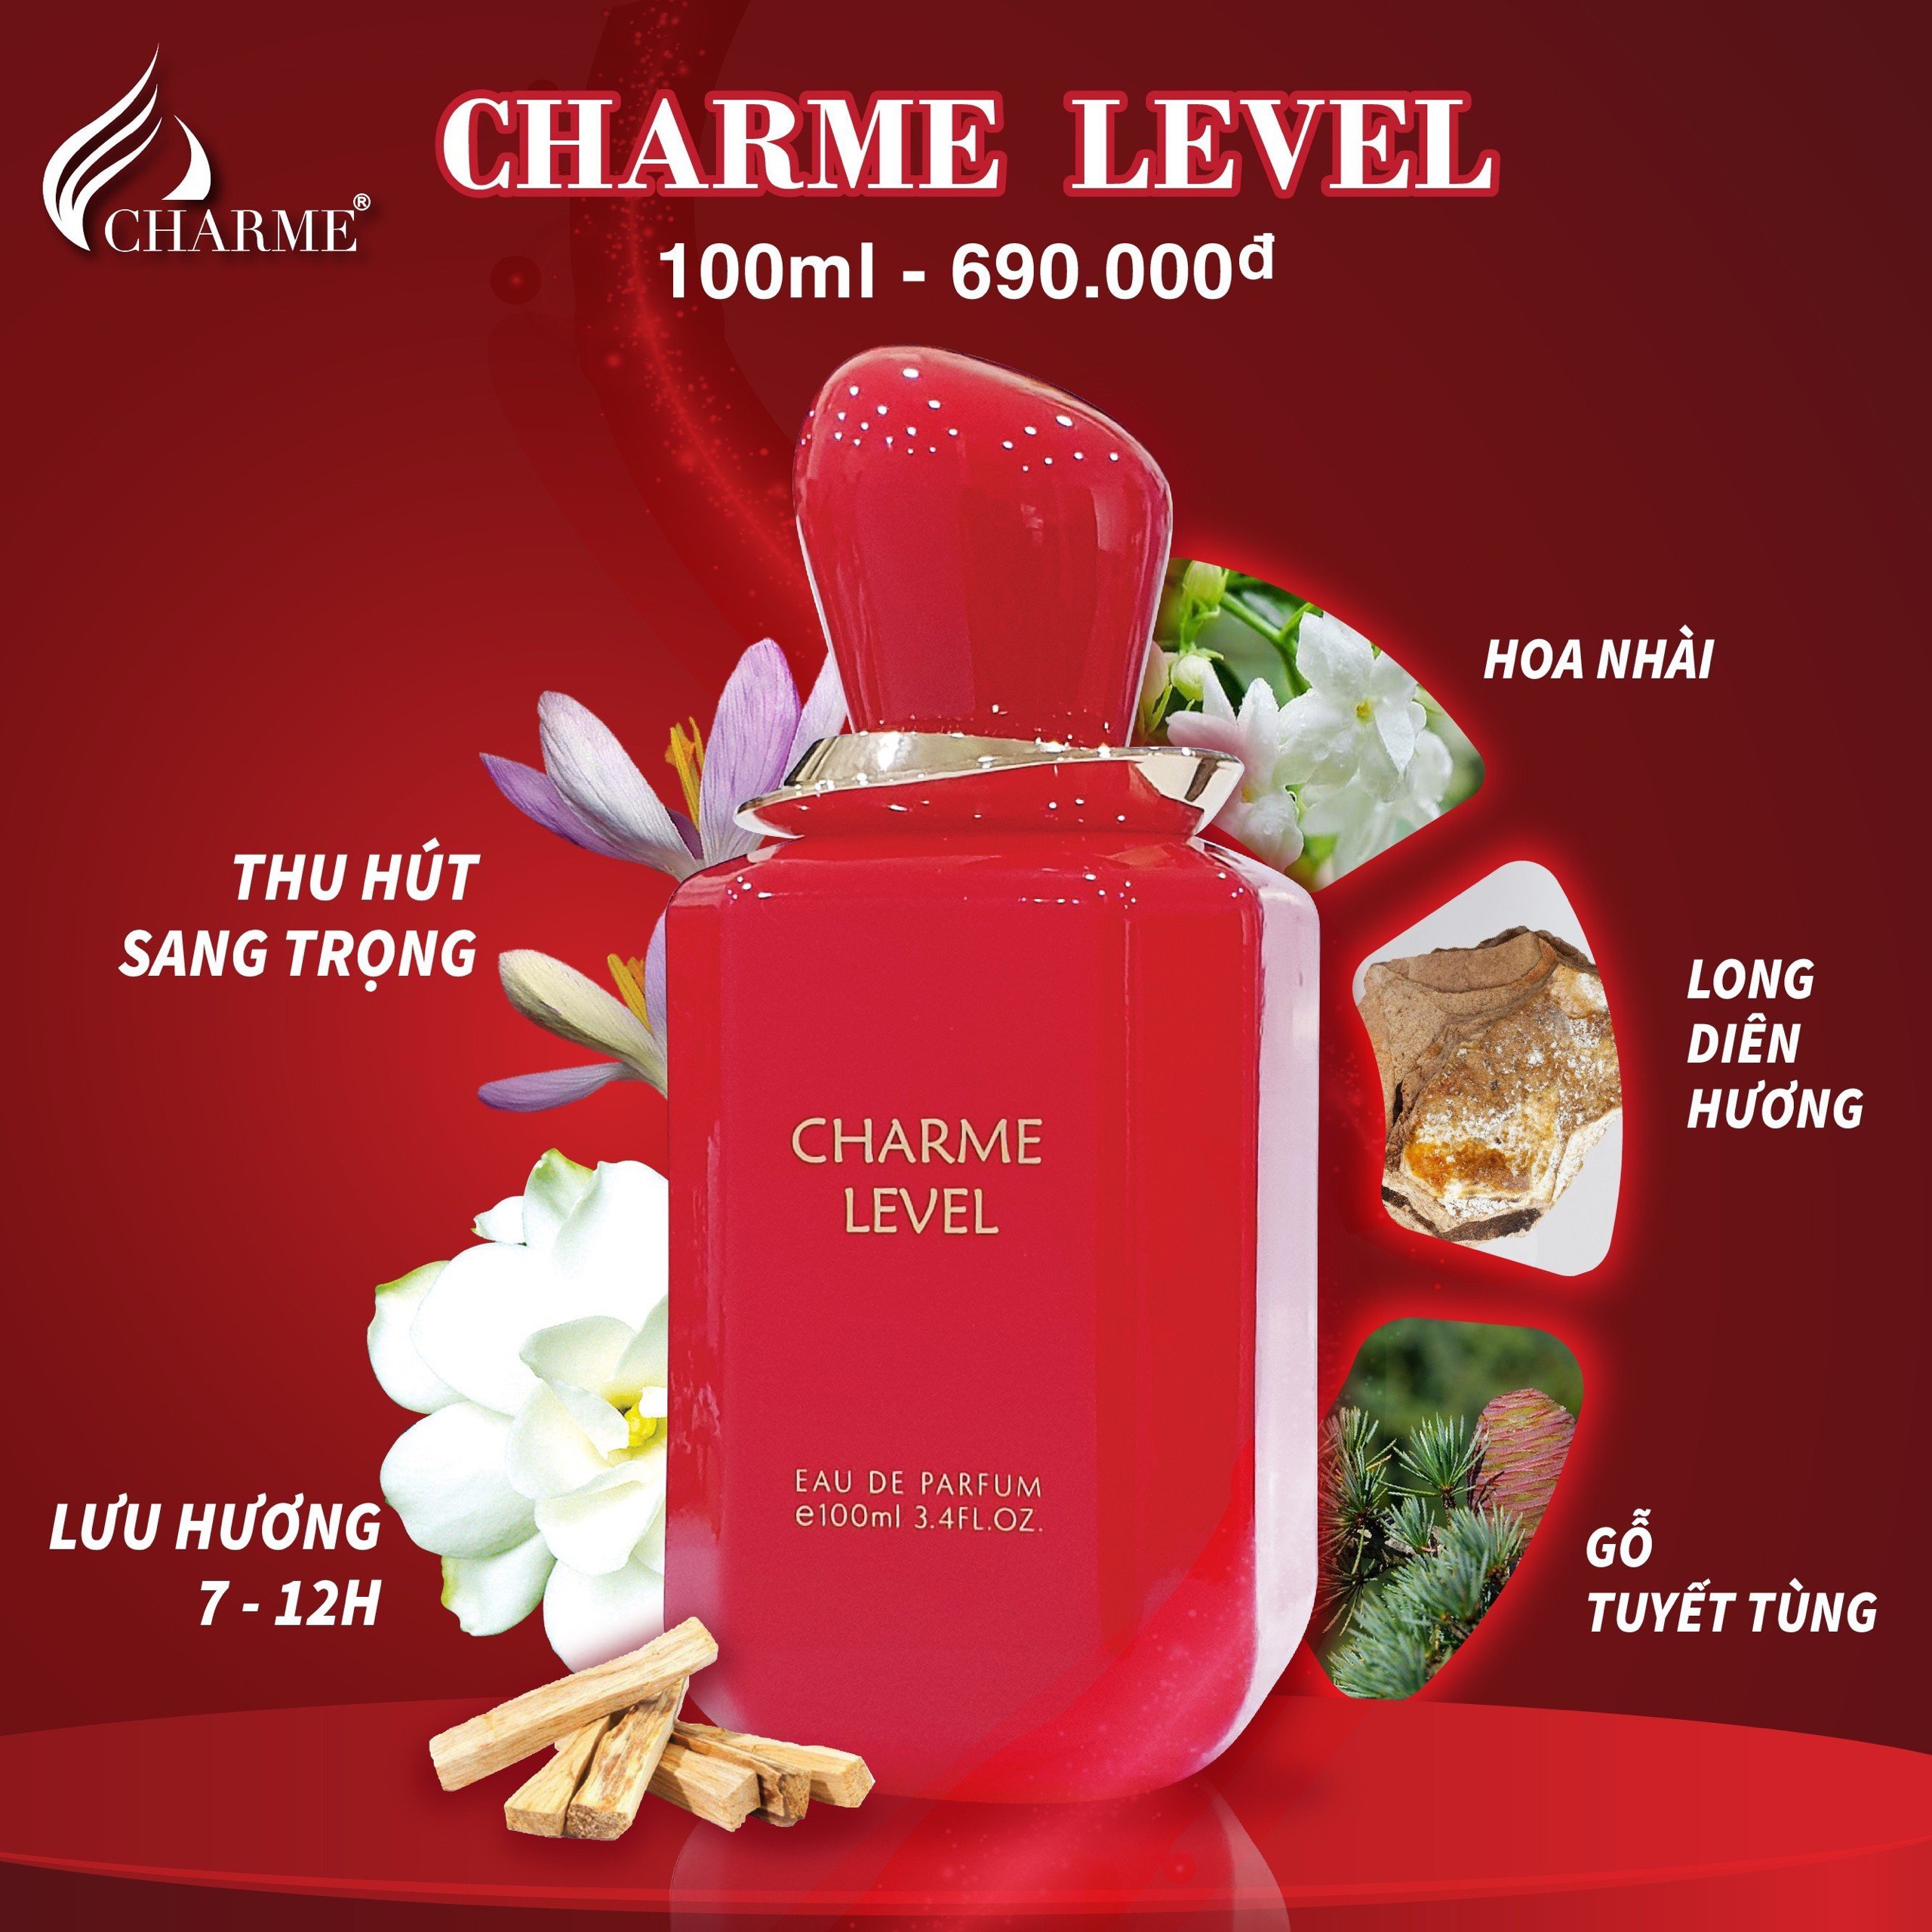 Nước hoa Charme Level 100ml là một trong những chai nước hoa được đánh giá cao nhất